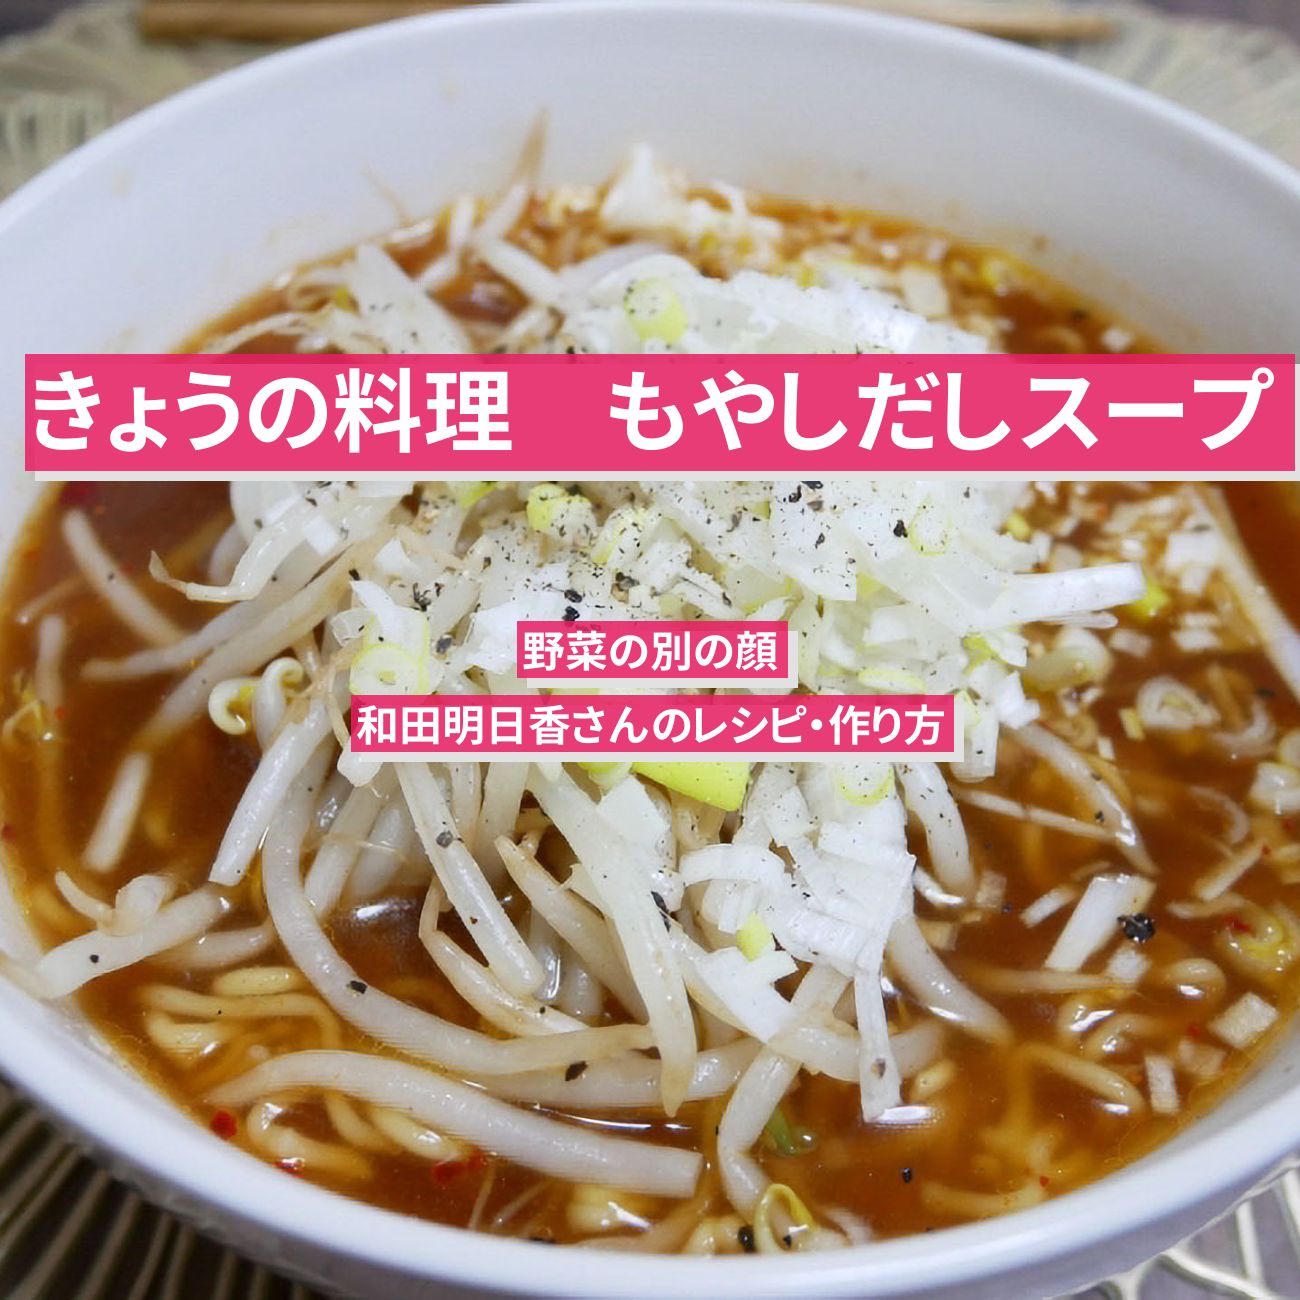 【きょうの料理】『もやしだしスープ』和田明日香さんのレシピ・作り方